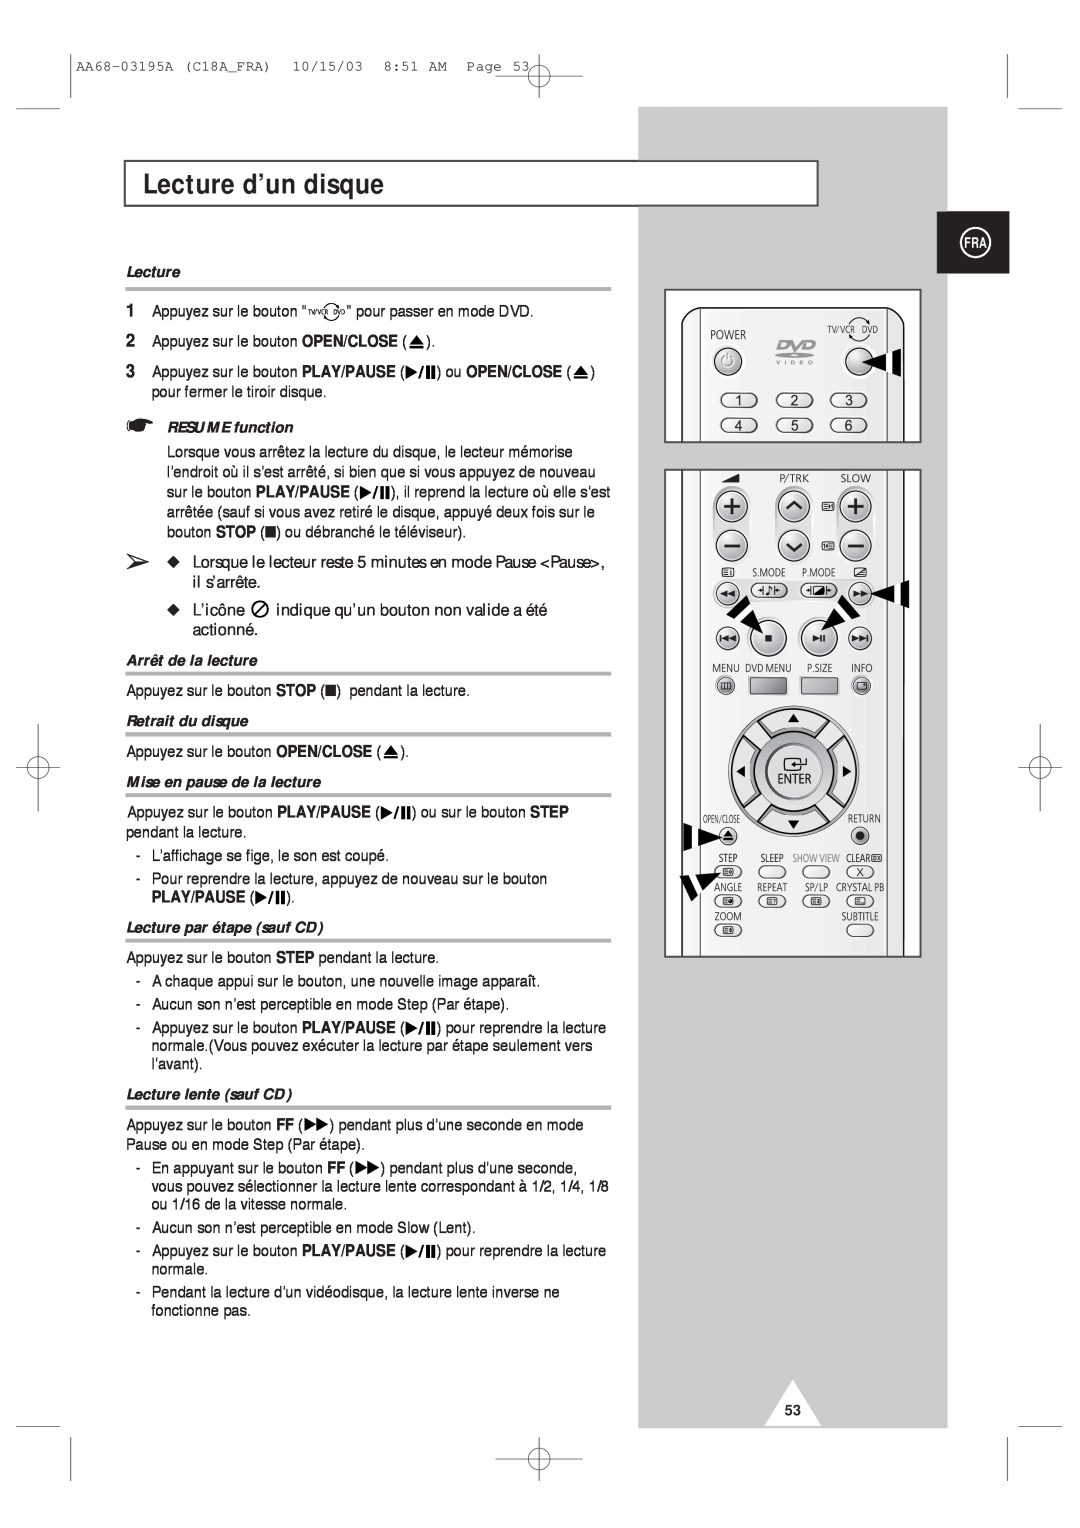 Samsung UW17J11VD5XXEF manual Lecture d’un disque, RESUME function, L’icône indique qu’un bouton non valide a été actionné 